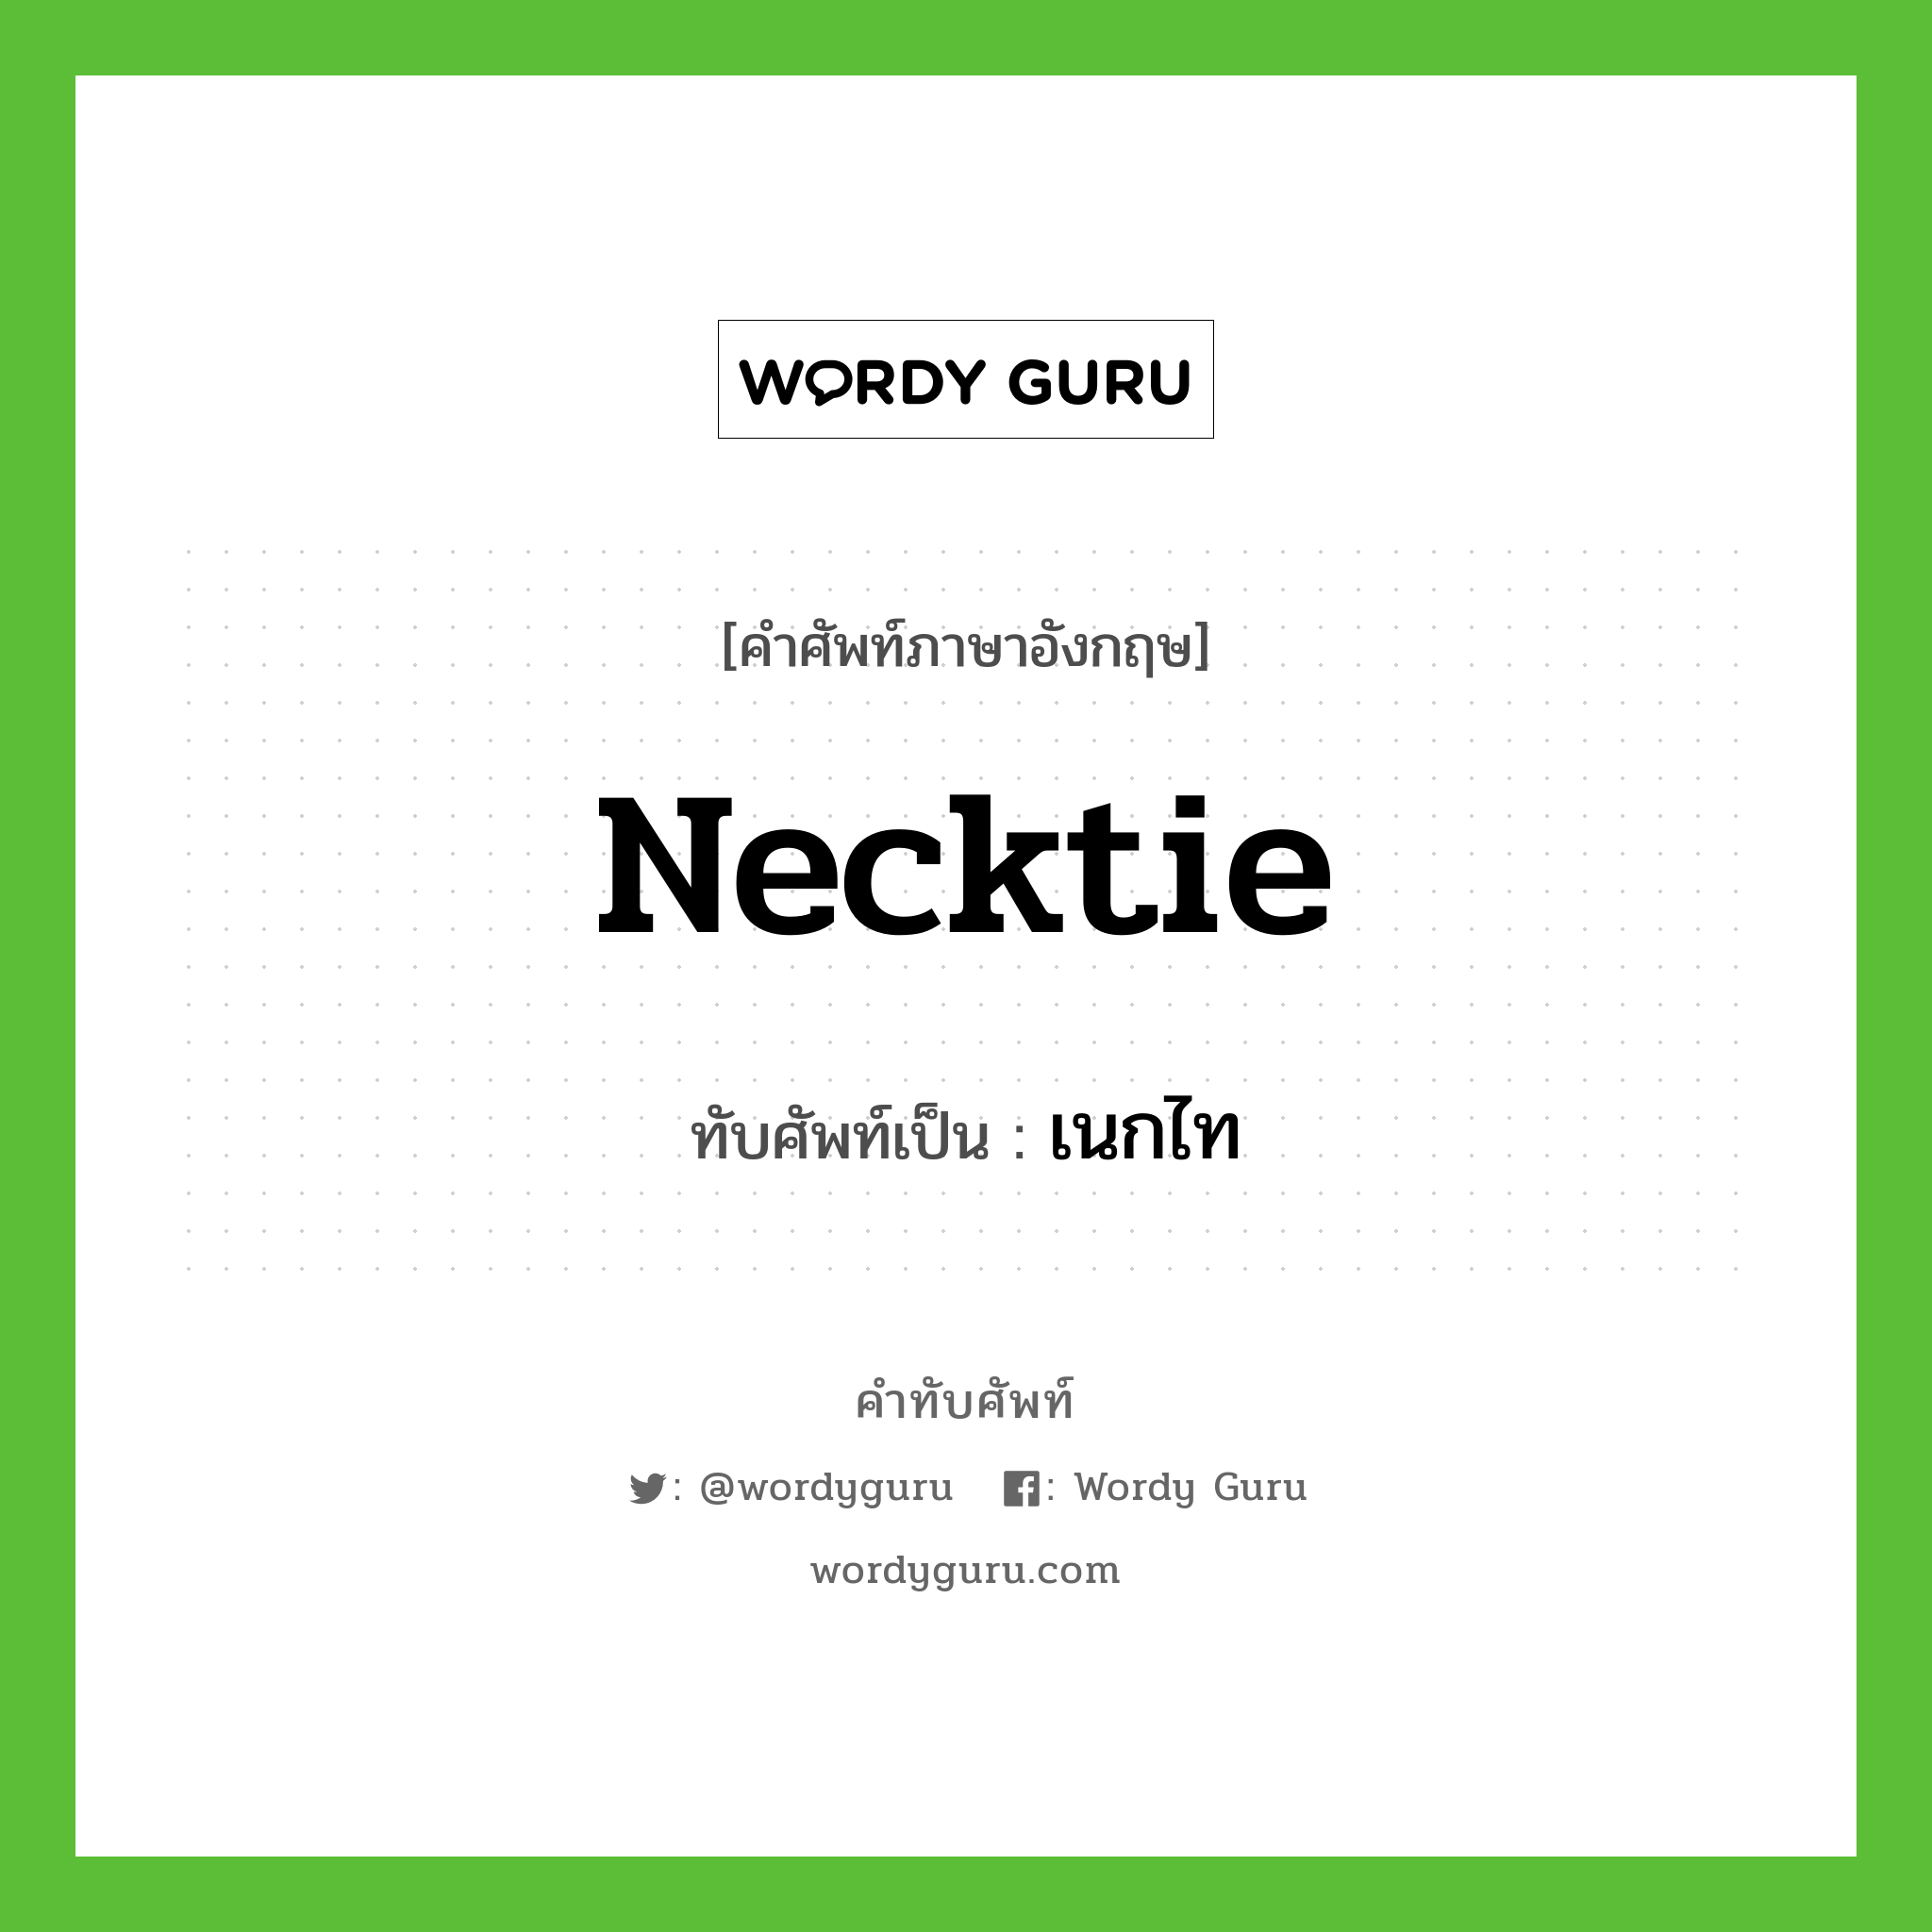 necktie เขียนเป็นคำไทยว่าอะไร?, คำศัพท์ภาษาอังกฤษ necktie ทับศัพท์เป็น เนกไท